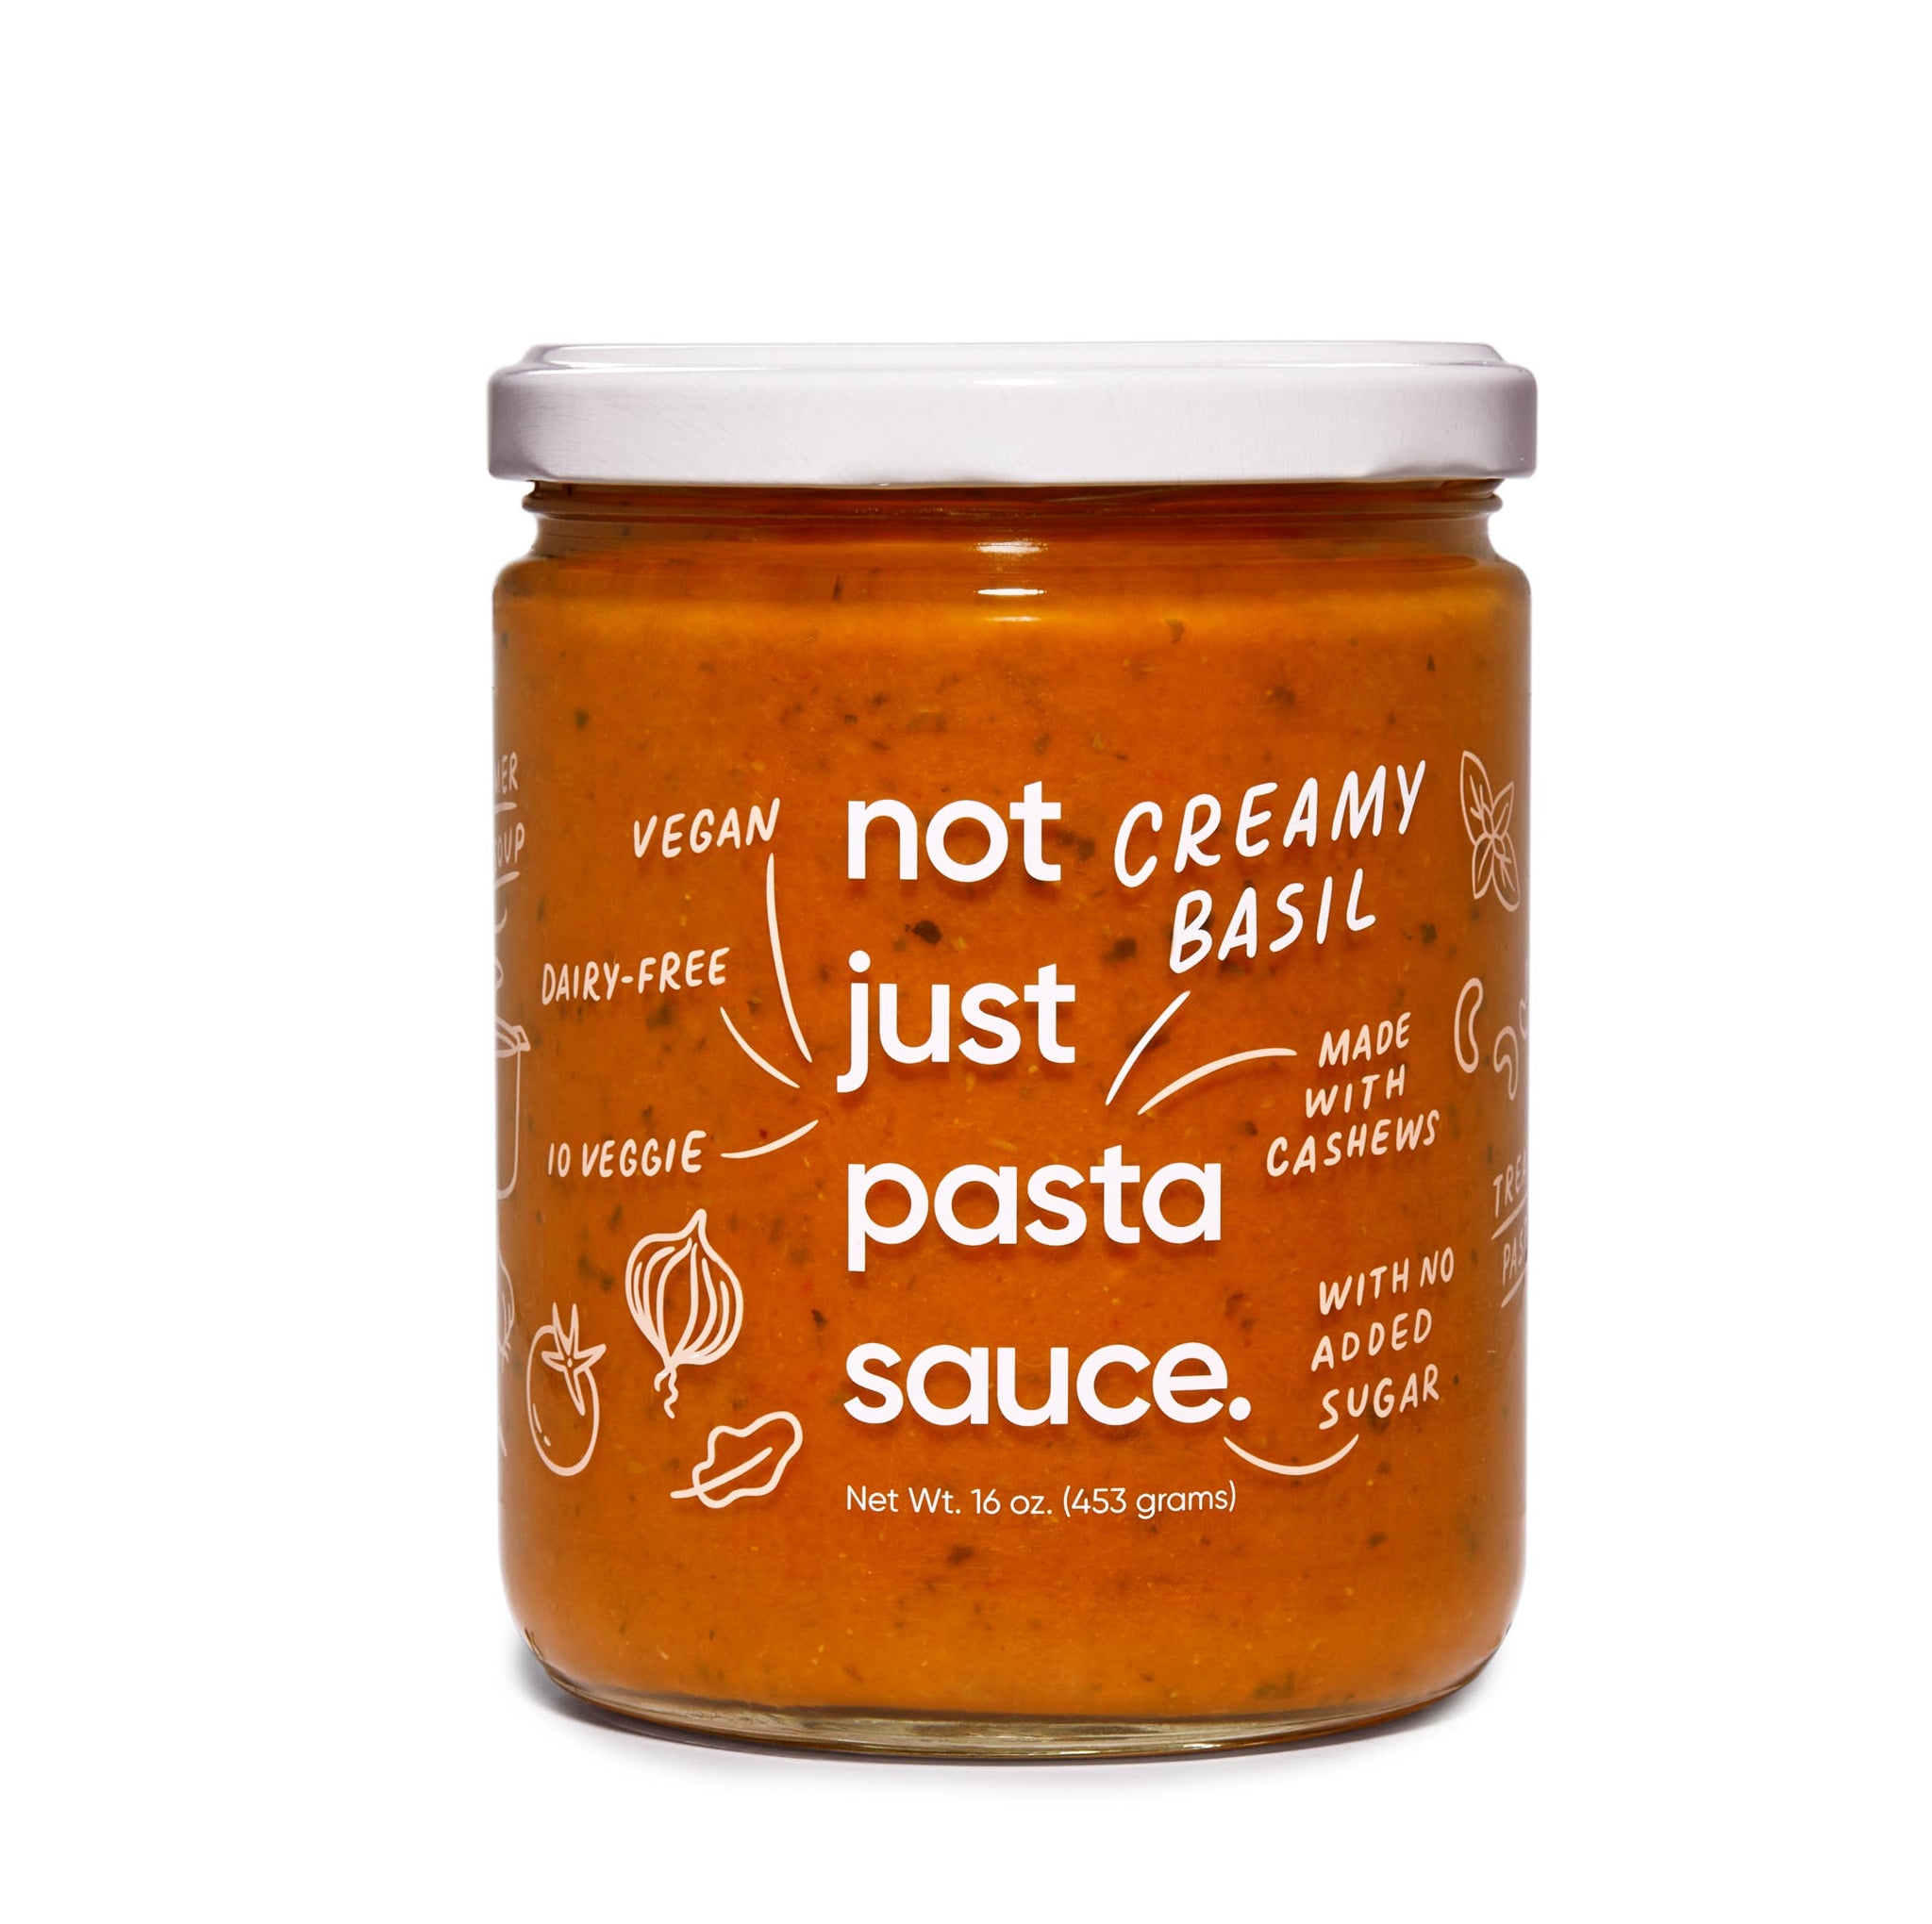 Not Just Creamy Basil Pasta Sauce